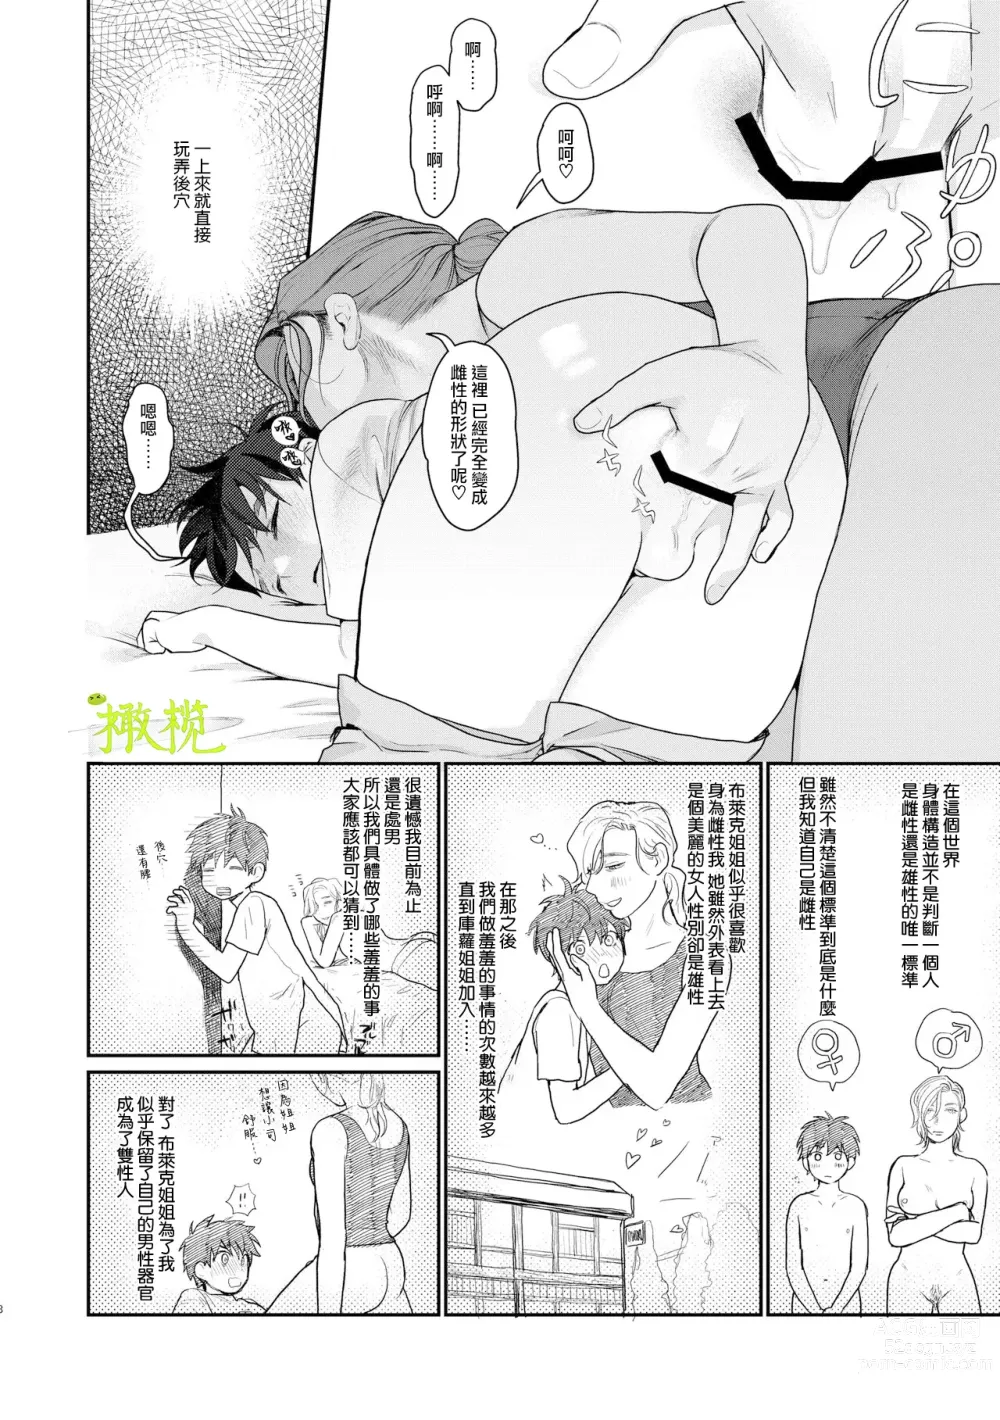 Page 7 of doujinshi 身为男生的我却在穿越到异世界后被同队大姐姐当作雌性疼爱了。2